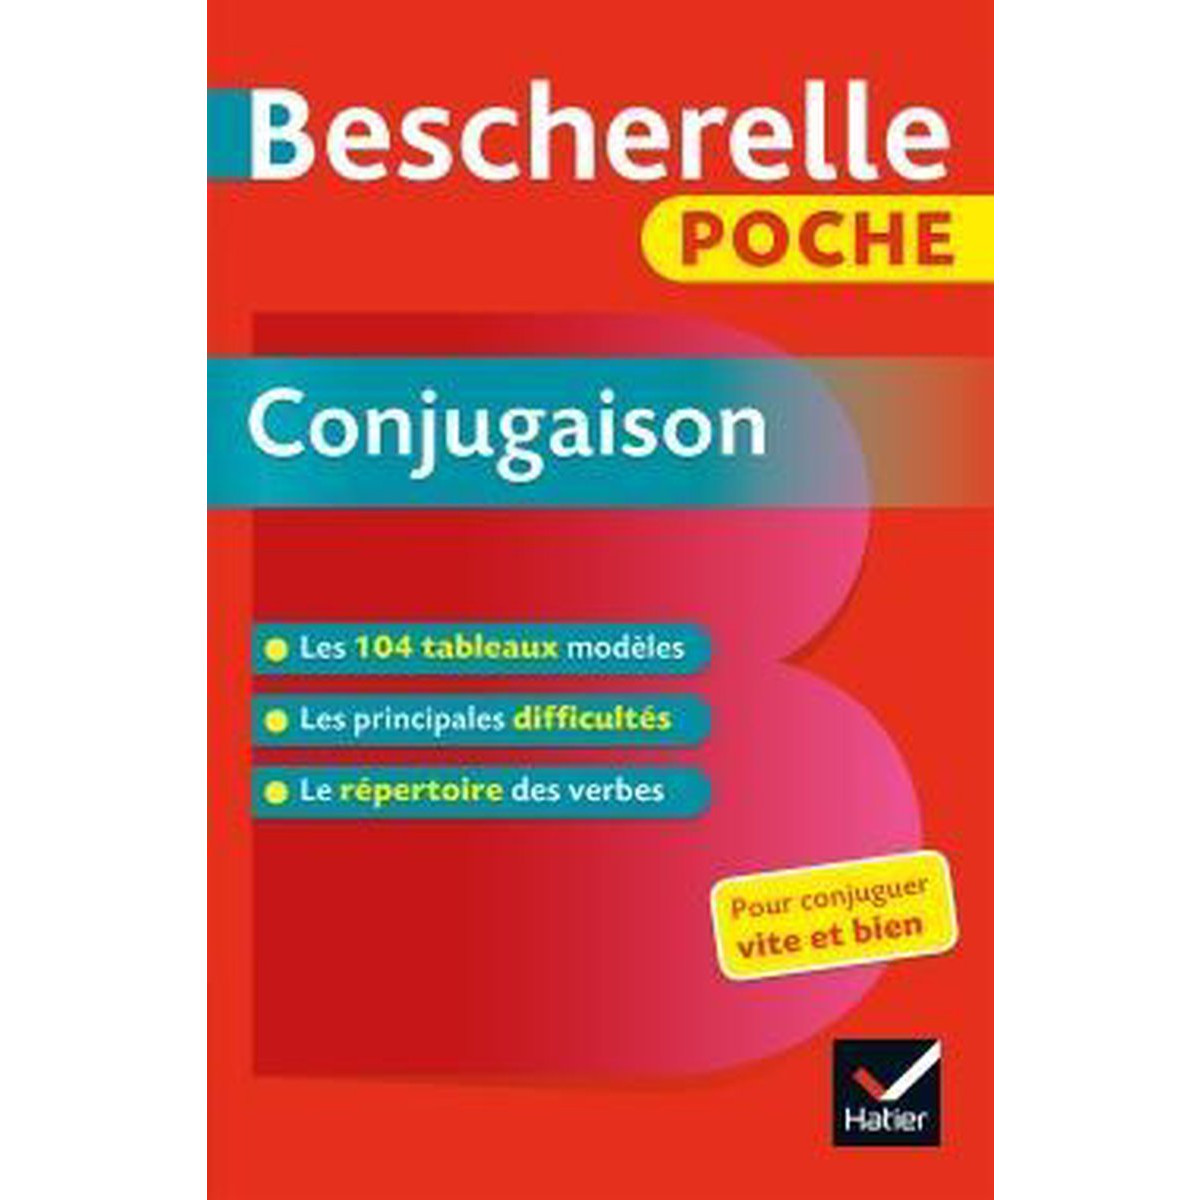 Sách tham khảo tiếng Pháp: Bescherelle Poche Conjugaison - L'Essentiel De La Conjugaison Francaise